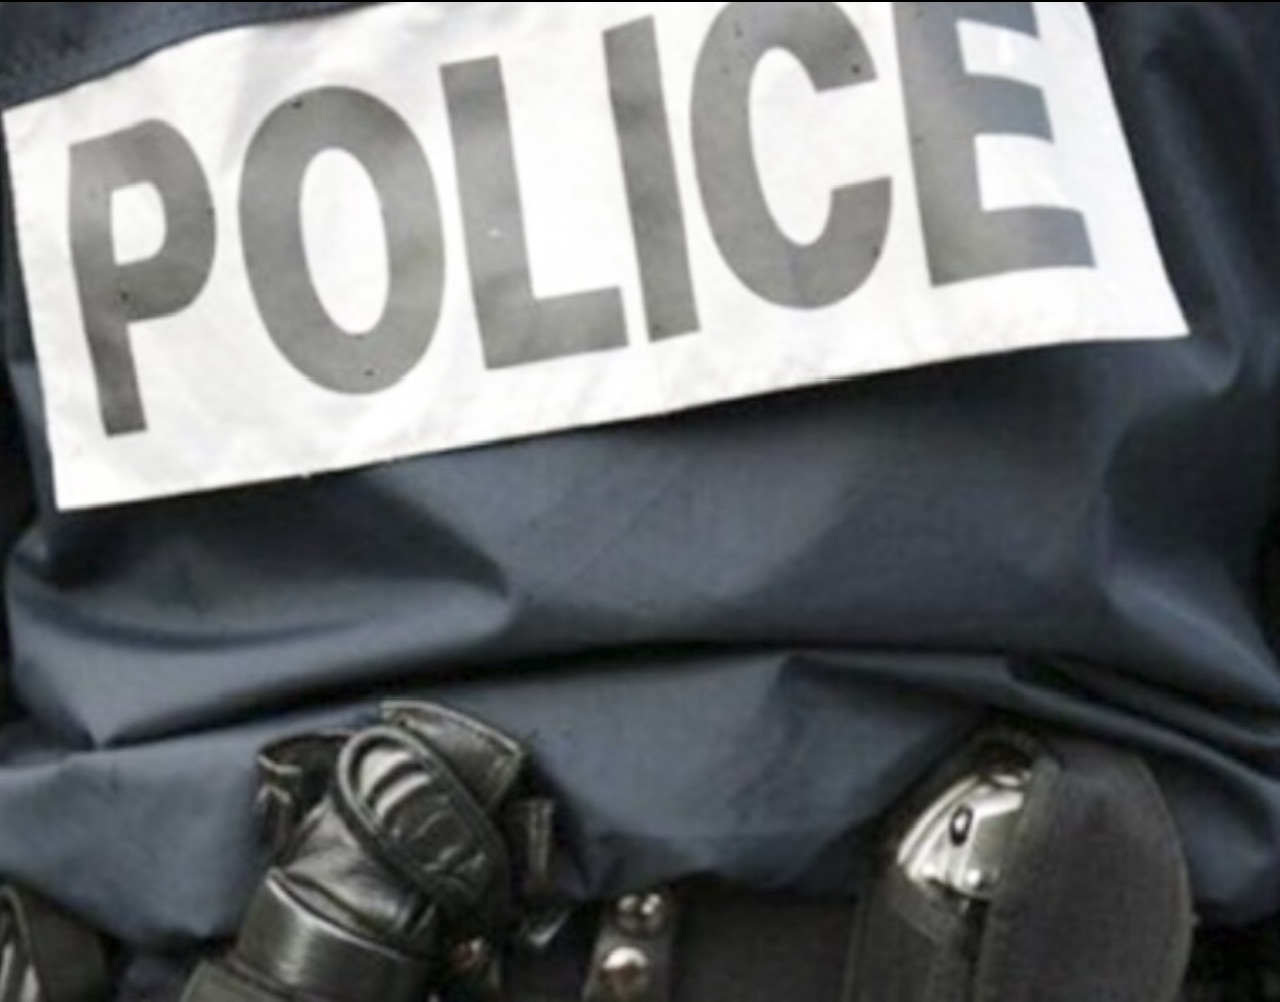 L'acte héroïque d'un policier au Havre : il sauve un homme alcoolisé de la noyade